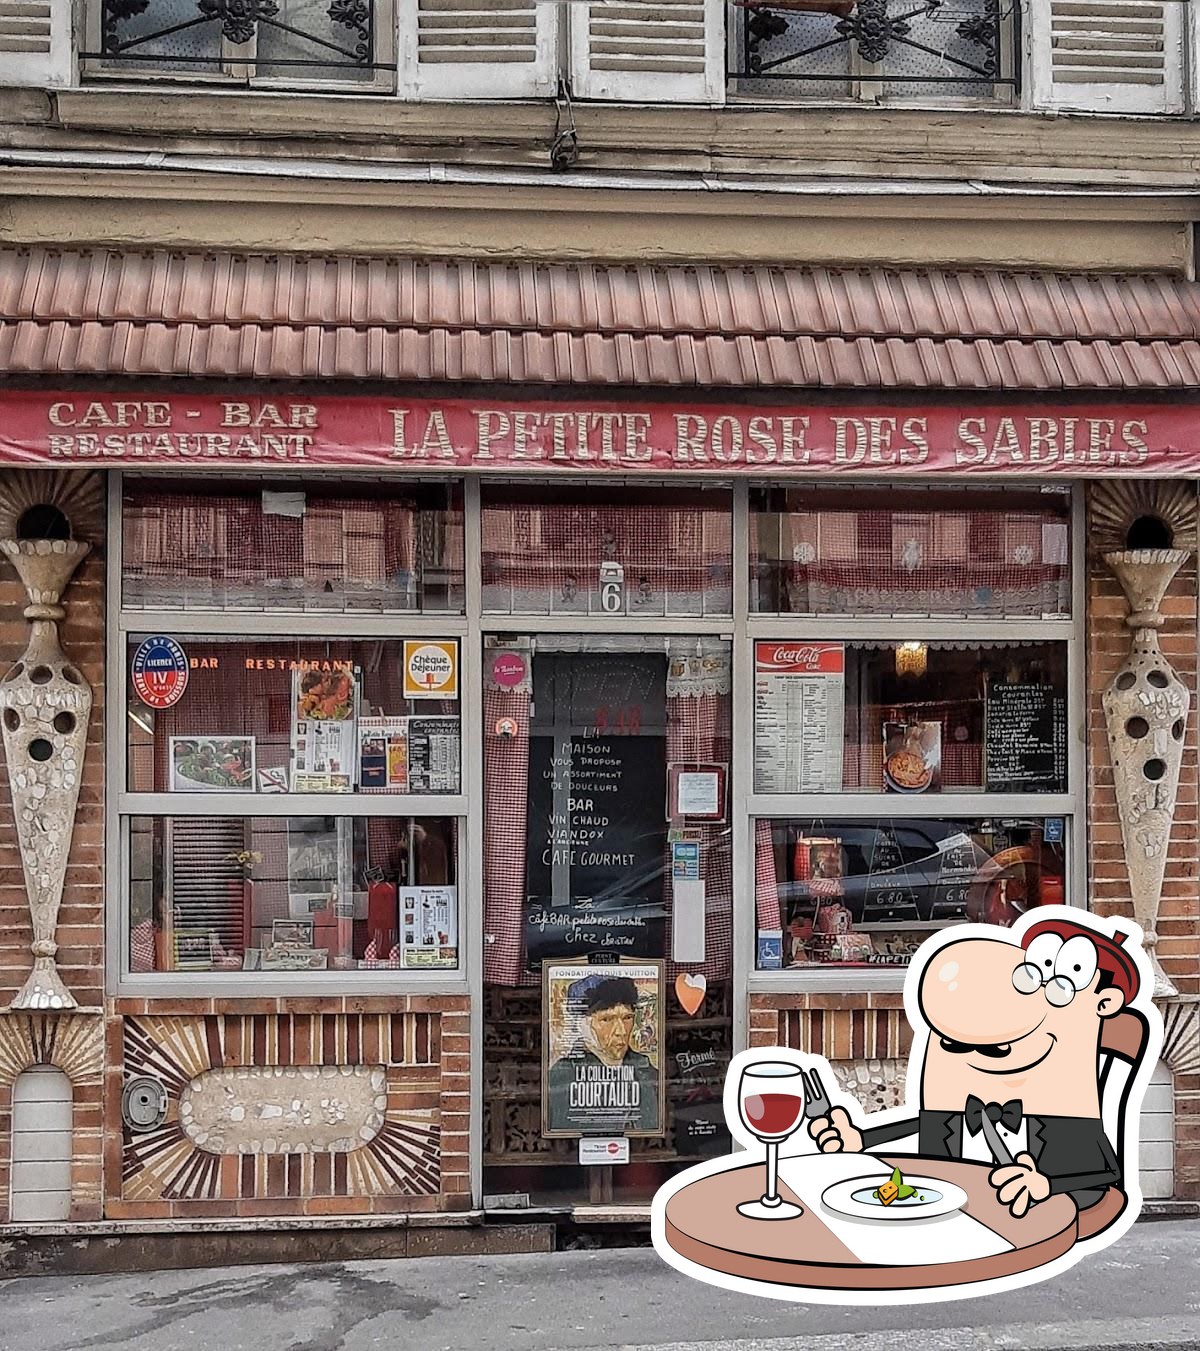 LA PETITE ROSE DES SABLES - 73 Photos & 57 Reviews - 6 rue de Lancry,  Paris, France - French - Restaurant Reviews - Phone Number - Yelp